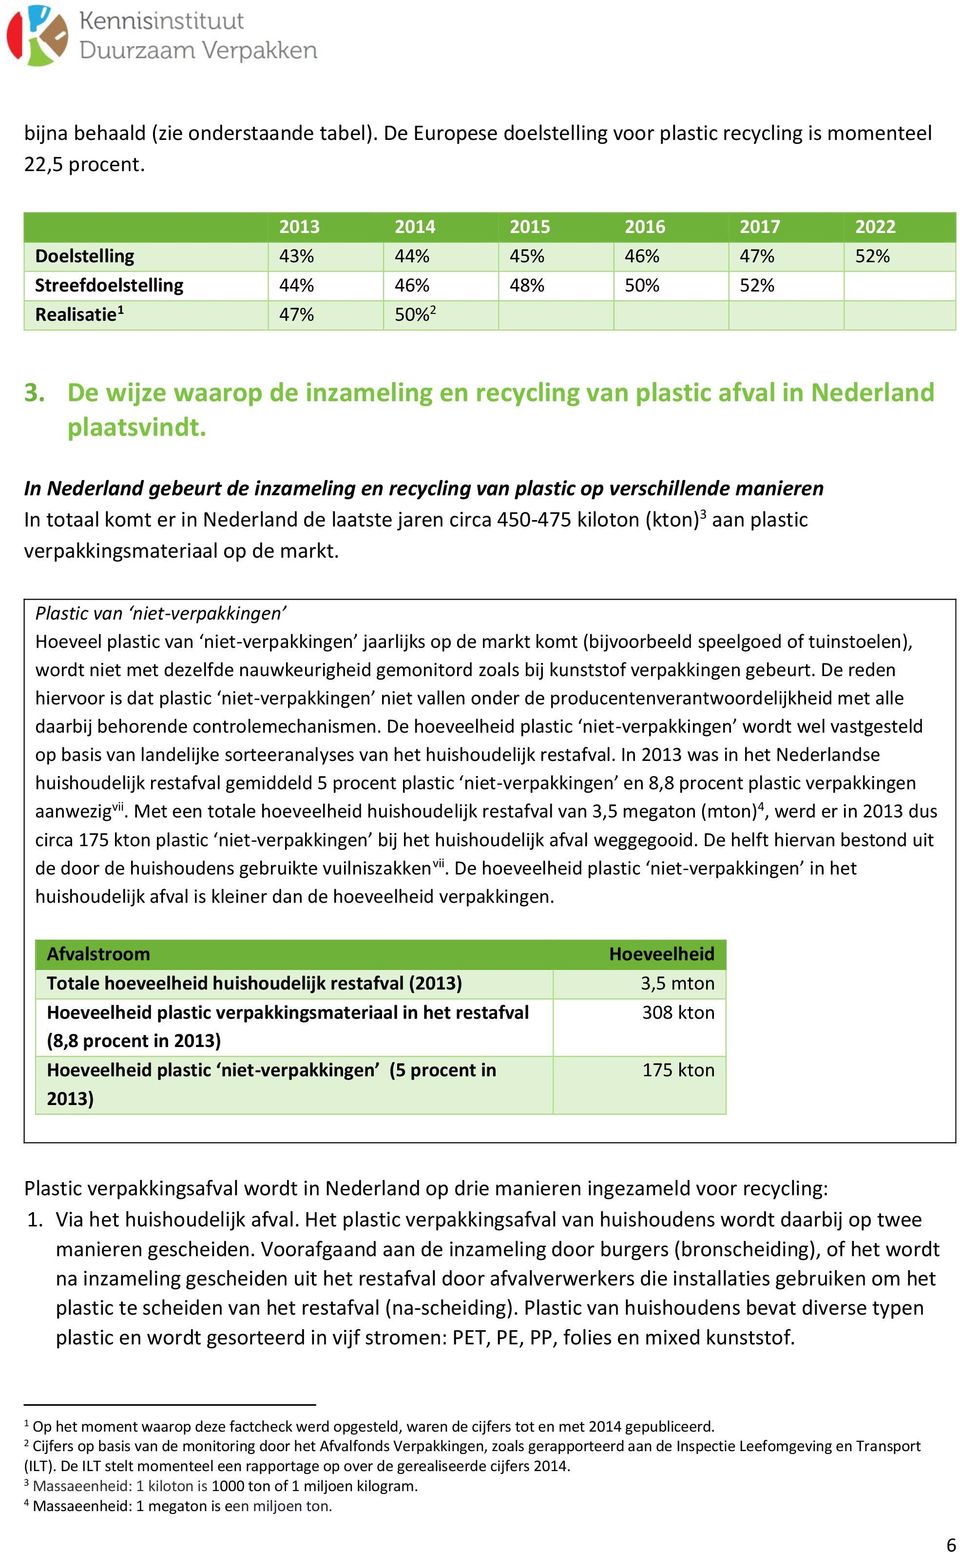 De wijze waarop de inzameling en recycling van plastic afval in Nederland plaatsvindt.